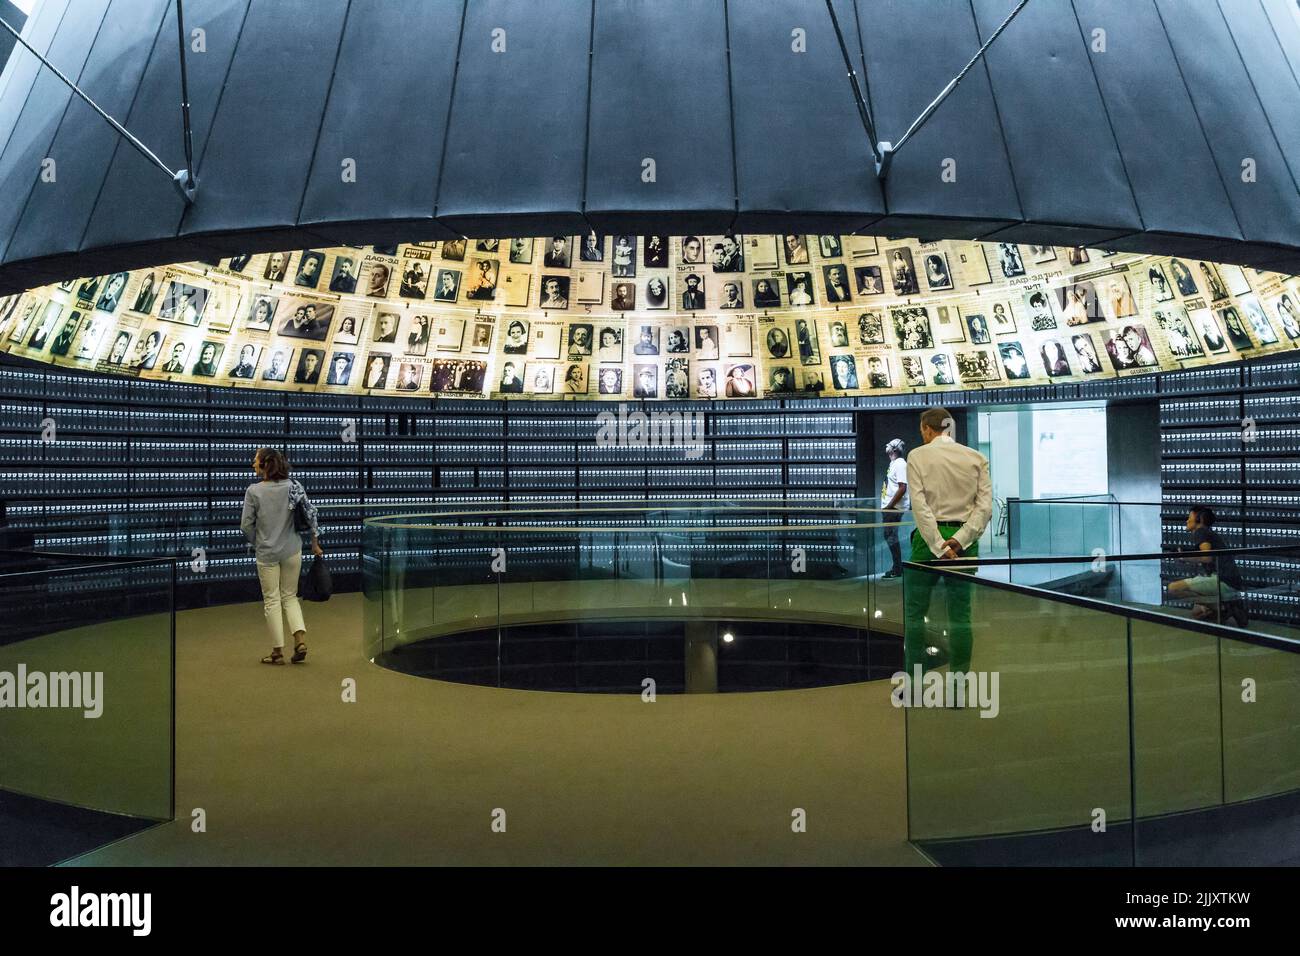 GERUSALEMME, ISRAELE - 24 SETTEMBRE 2017: Questa è la Sala dei nomi nel Museo storico del Memoriale dell'Olocausto (Yad Vashem). Foto Stock